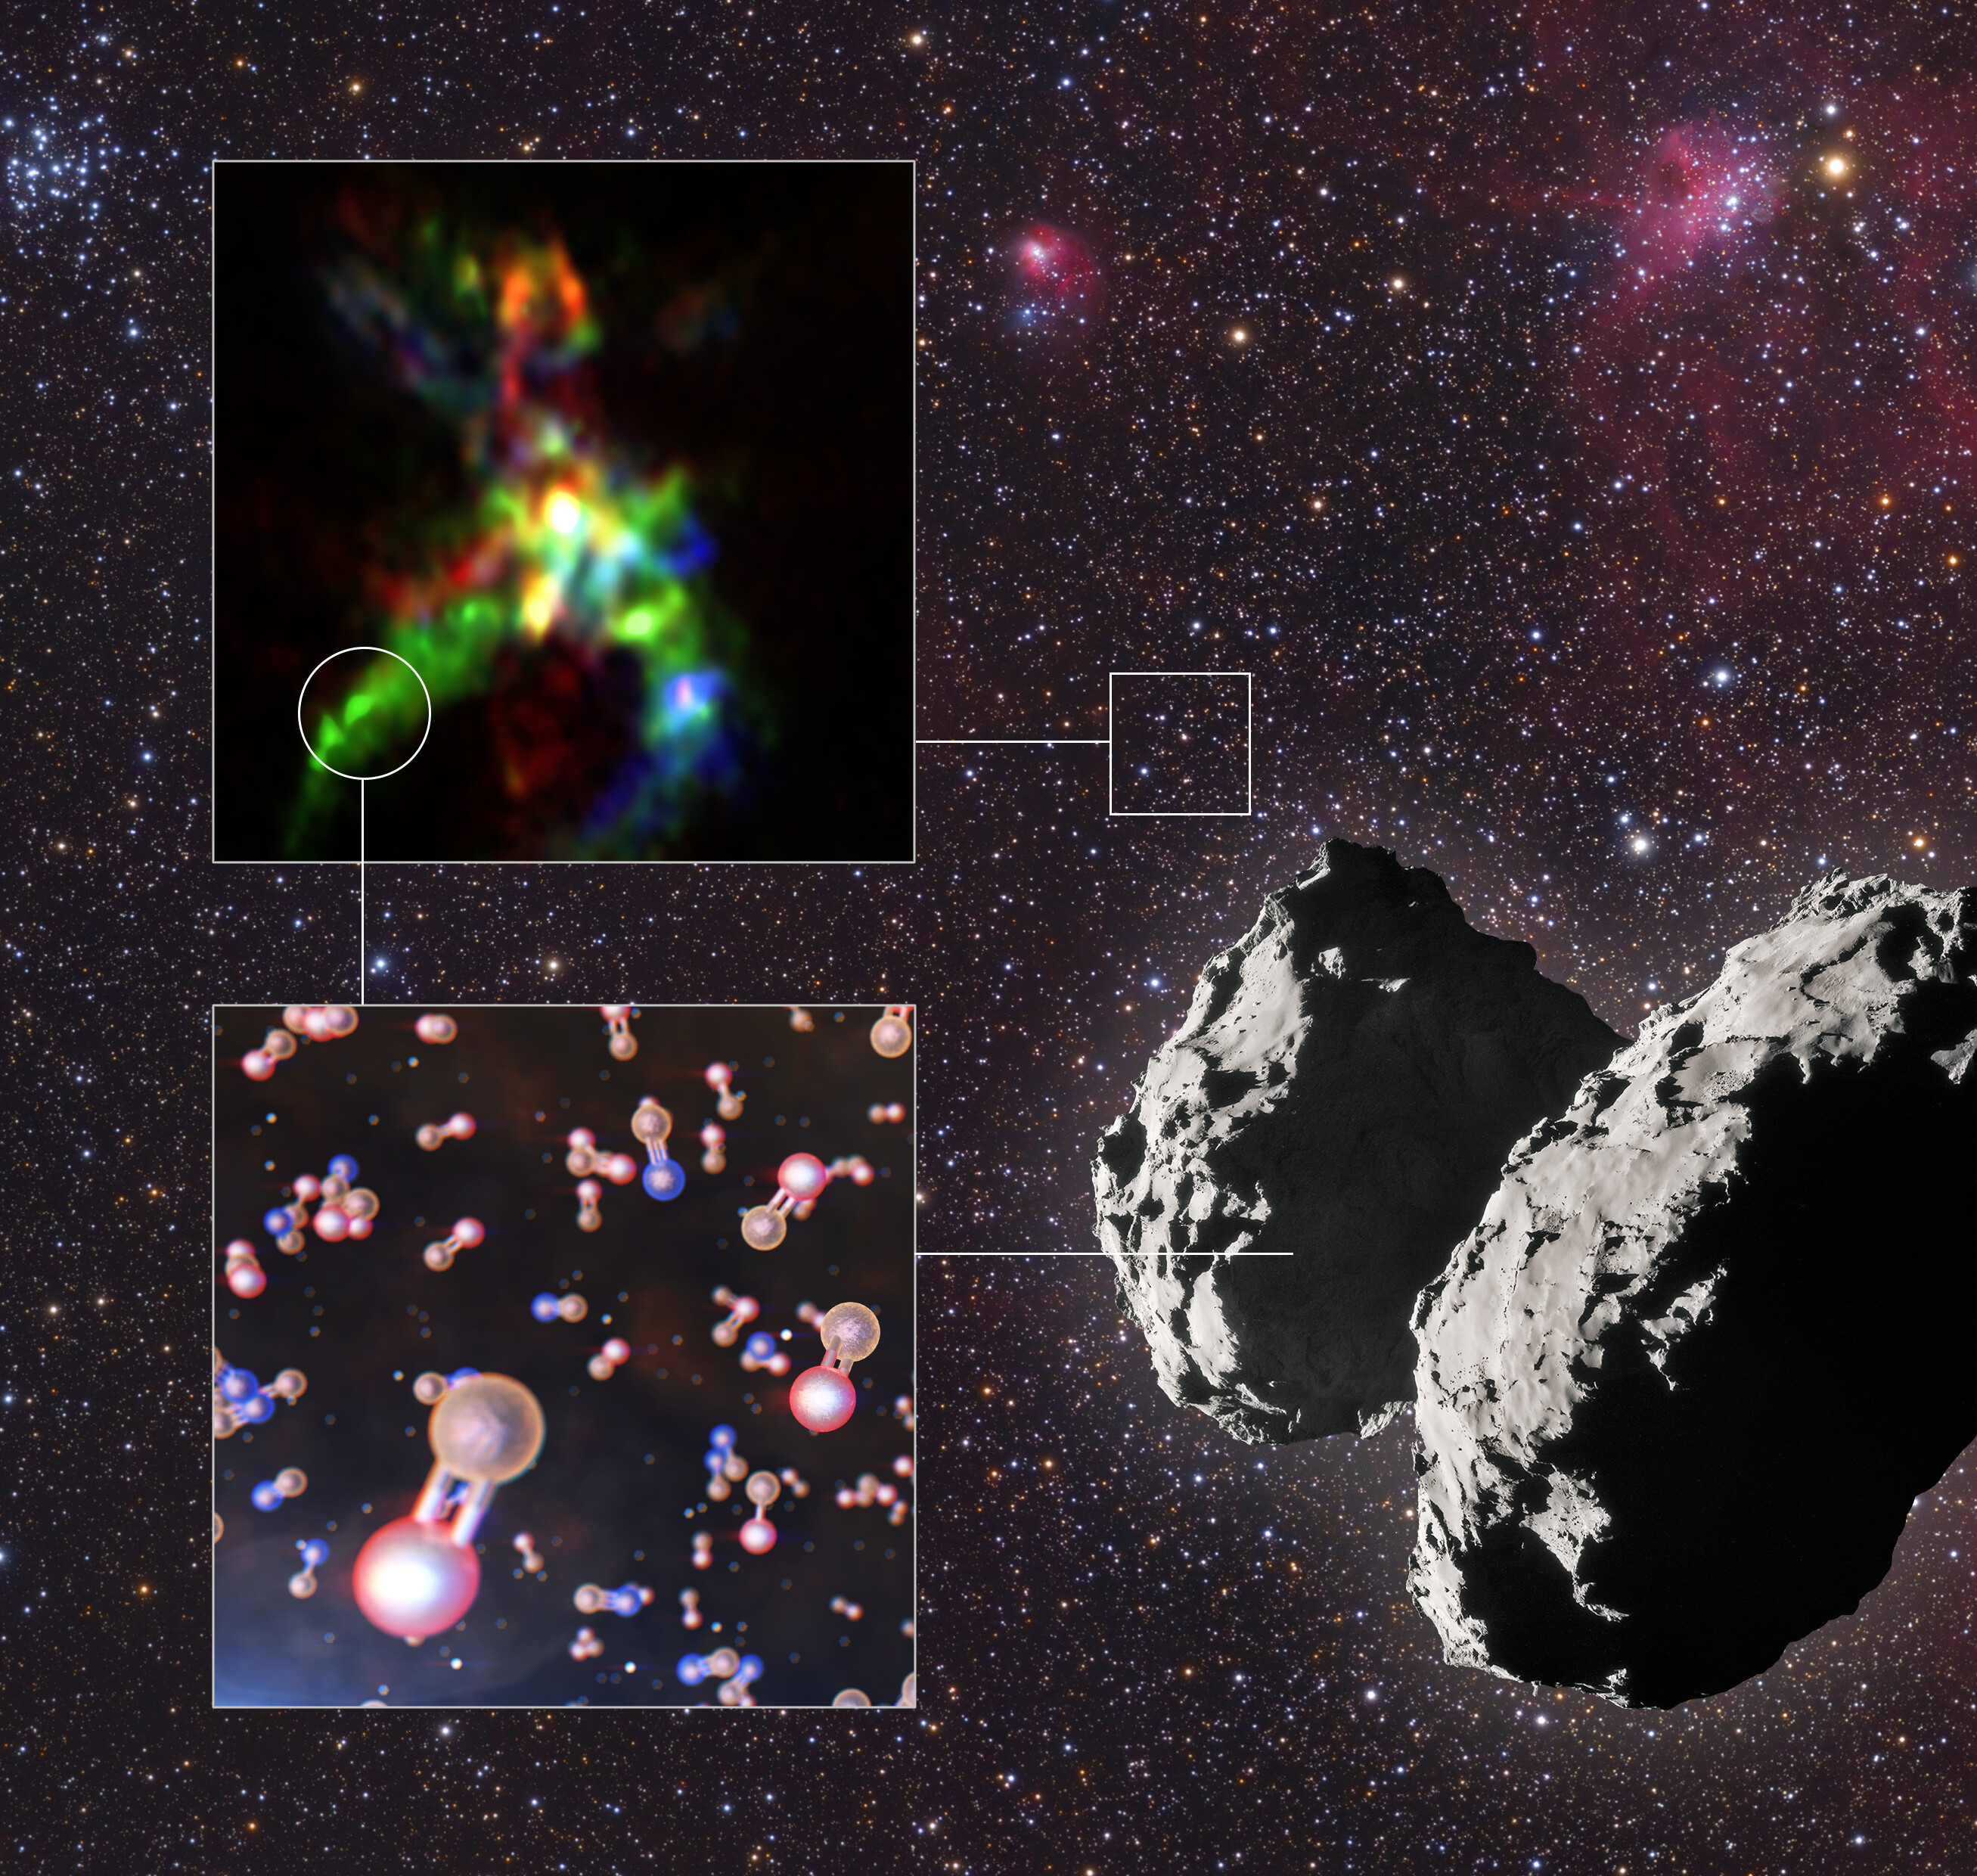 En la imagen se aprecia en la parte superior izquierda la región de formación de estrellas conocida como AFGL 5142 y dentro de un círculo rojo uno de los lugares donde se han encontrado moléculas de fósforo. En la parte inferior izquierda, representado en naranja y rojo, desvela la presencia de monóxido de fósforo. Otra molécula encontrada fue el nitruro de fósforo, representado en naranja y azul. Crédito: ALMA (ESO/NAOJ/NRAO), Rivilla et al.; ESO/L. Calçada; ESA/Rosetta/NAVCAM; Mario Weigand.